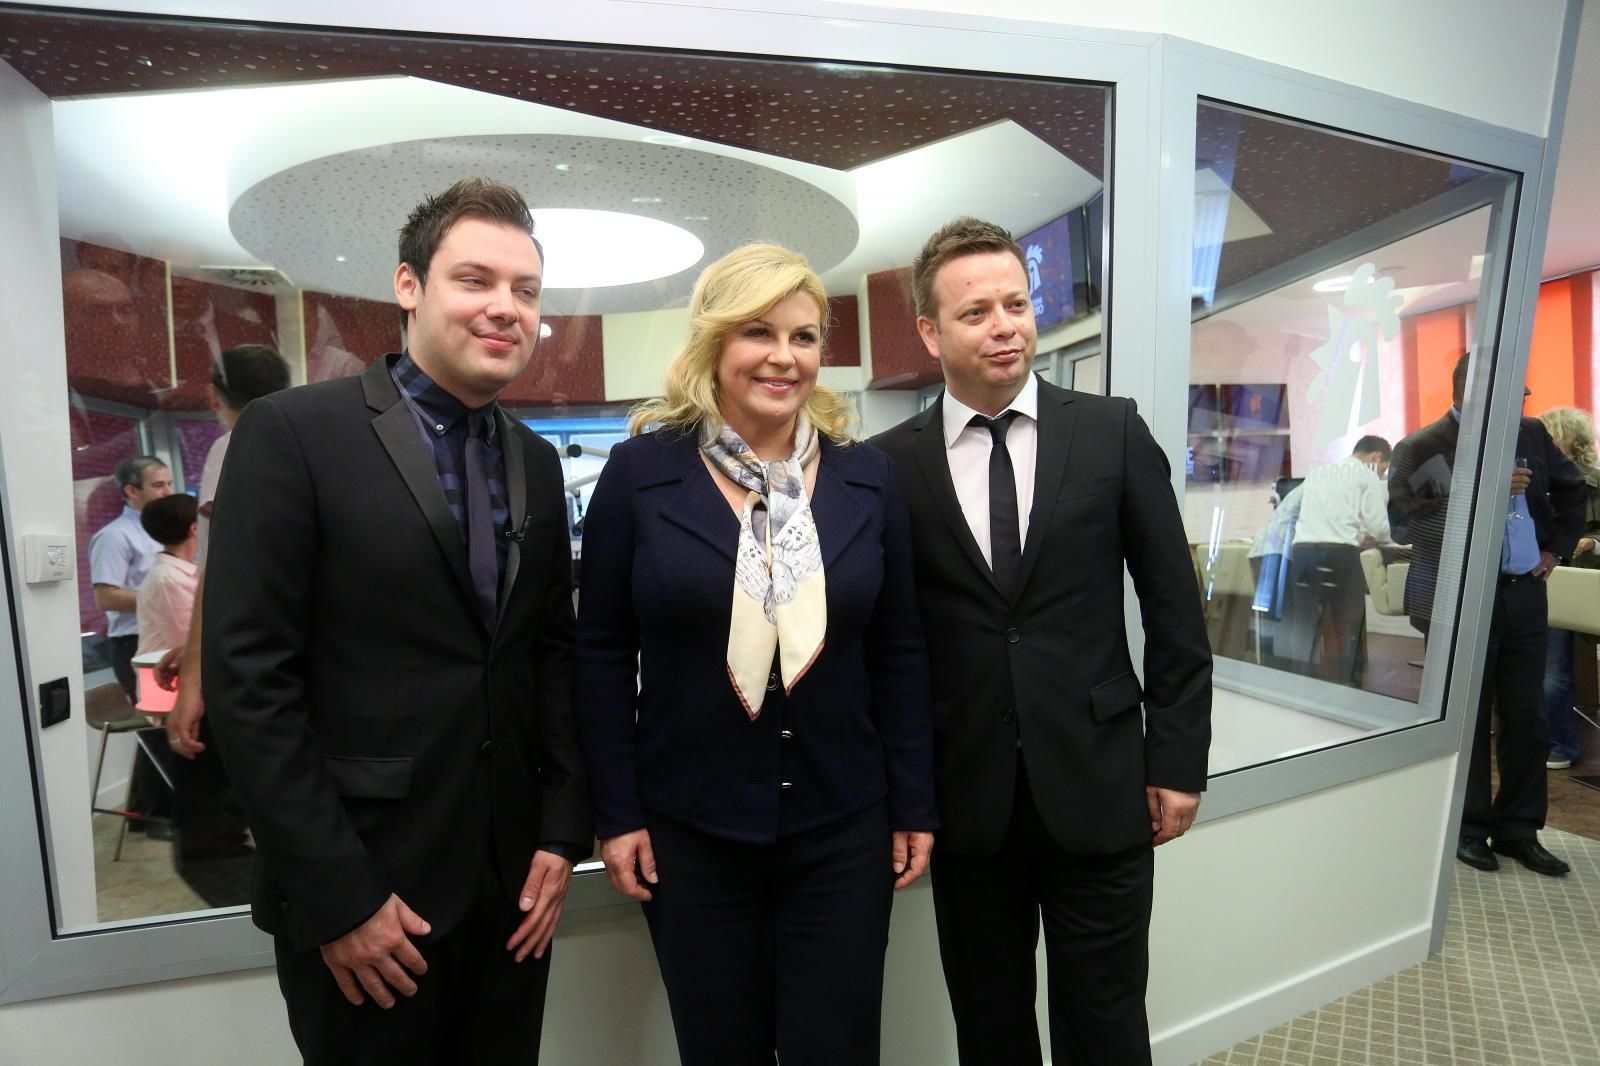 10.06.2016., Zagreb - Predsjednica RH Kolinda Grabar Kitarovic otvorila je novi studio Narodnog radija.
Photo: Borna Filic/PIXSELL